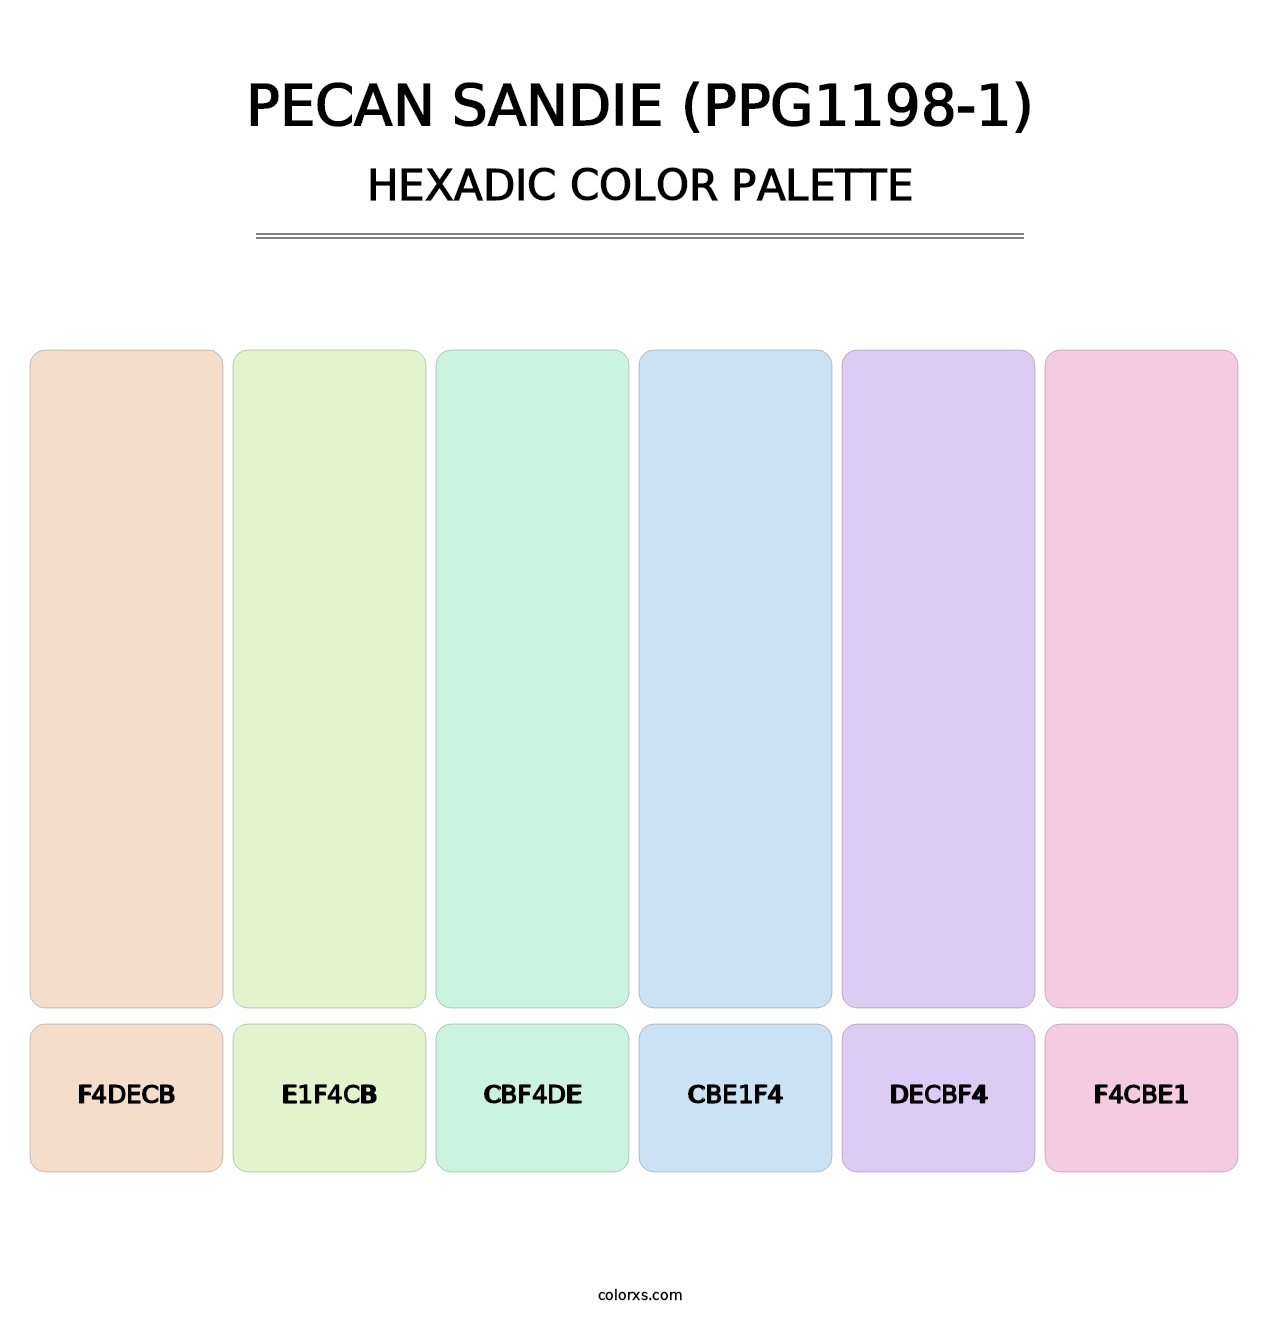 Pecan Sandie (PPG1198-1) - Hexadic Color Palette